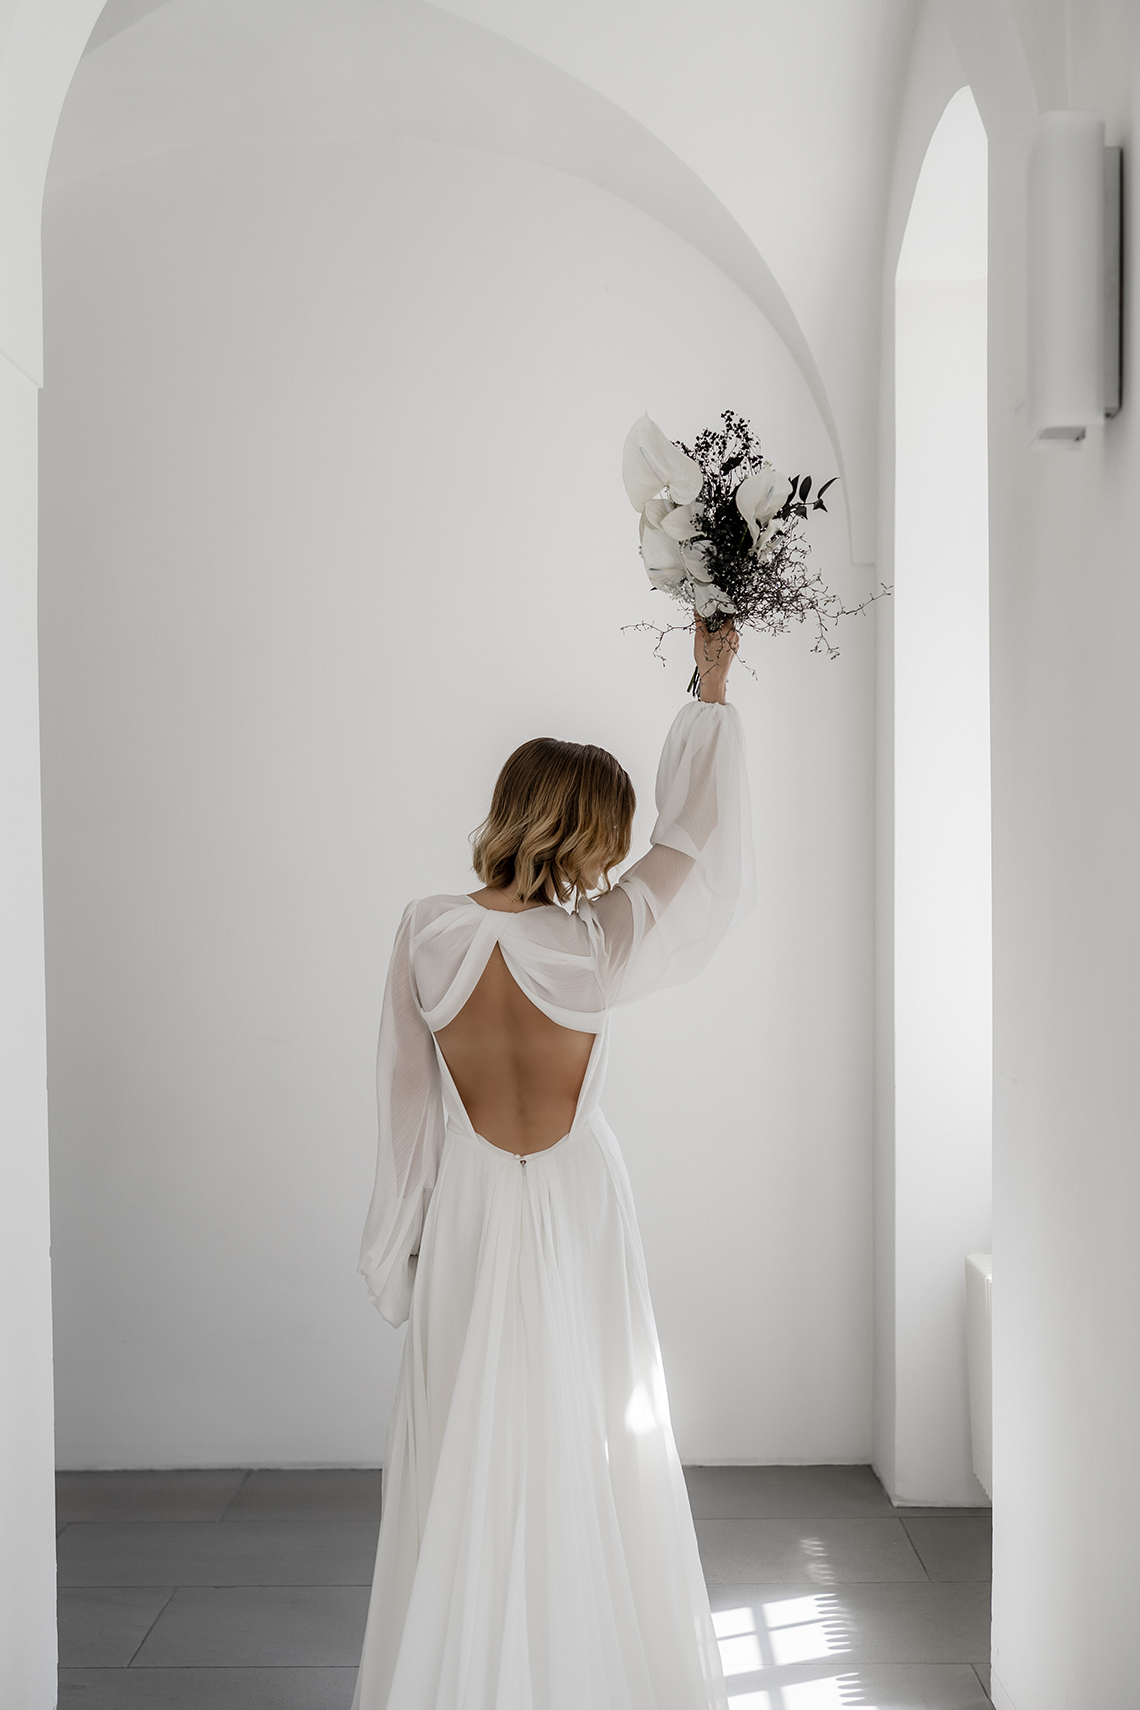 Inspiración suiza moderna y minimalista para bodas - Dos almas - Claudia Fellino - Murashka Bridal - Reflexiones sobre el matrimonio 17